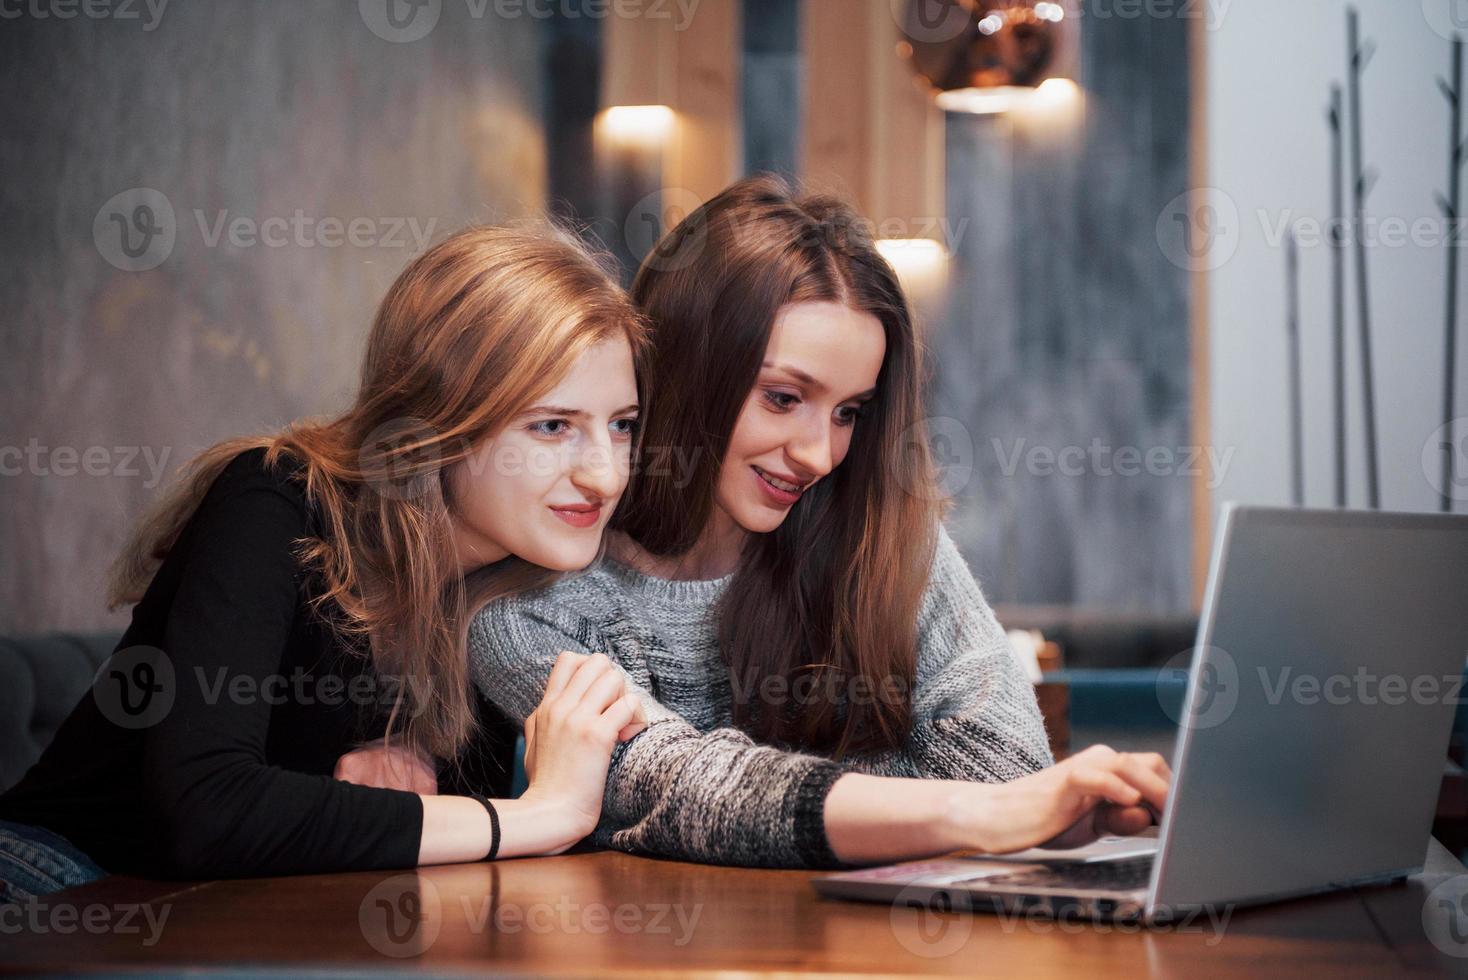 två tjejer som surfar på nätet, gör inlägg på sociala nätverk på en bärbar dator och har roligt foto